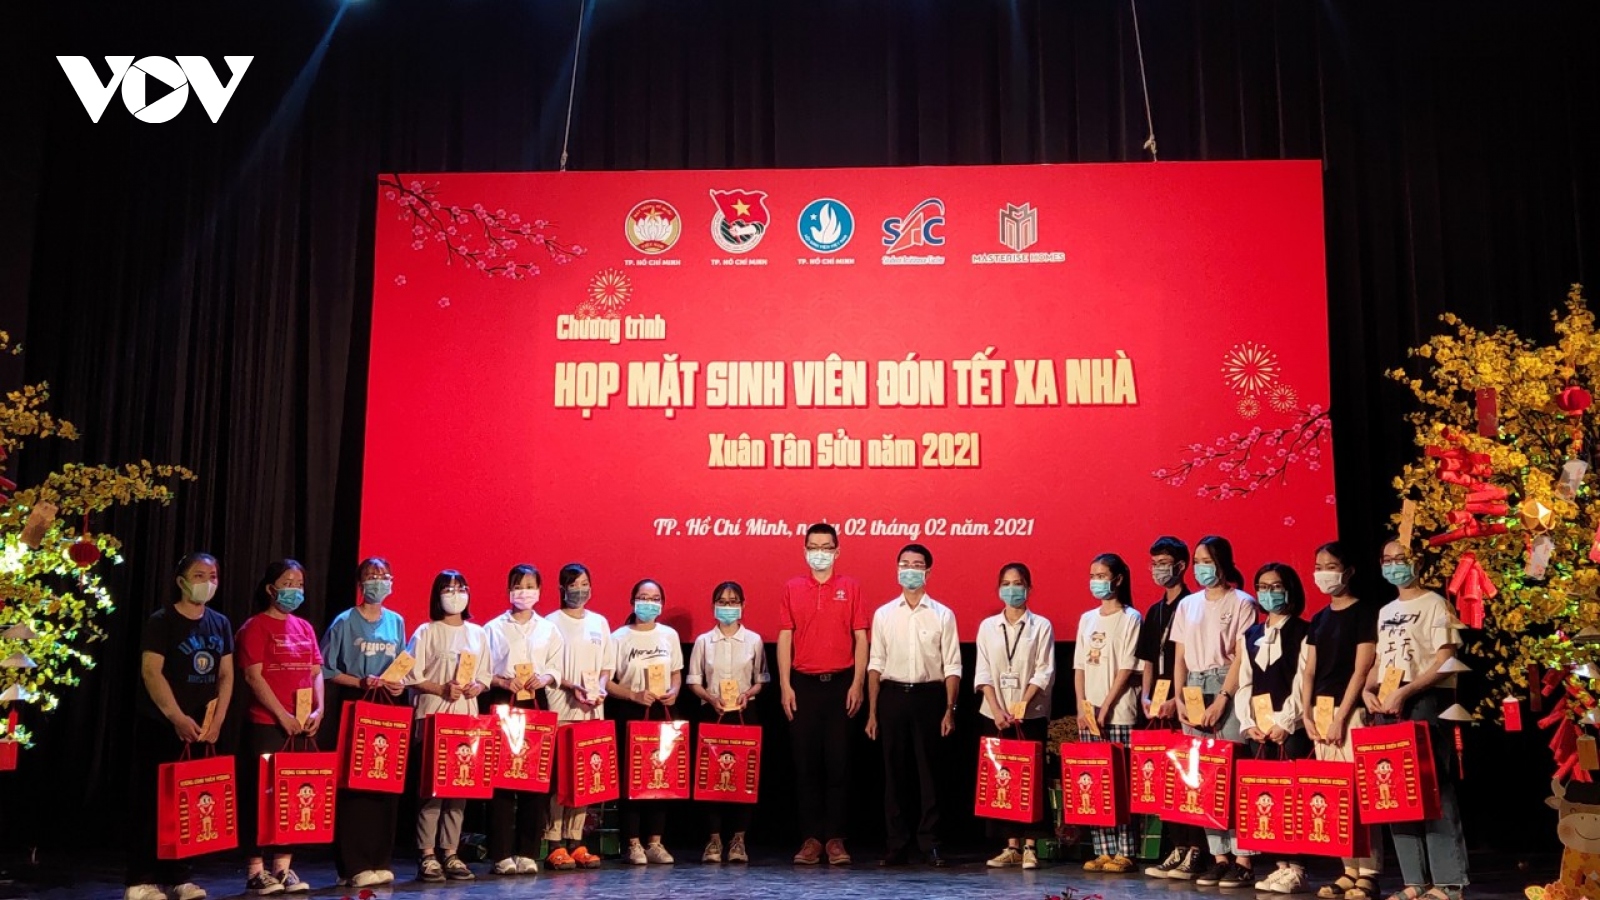 Hàng nghìn sinh viên nghèo được hỗ trợ ở lại TP HCM đón Tết vì dịch Covid-19